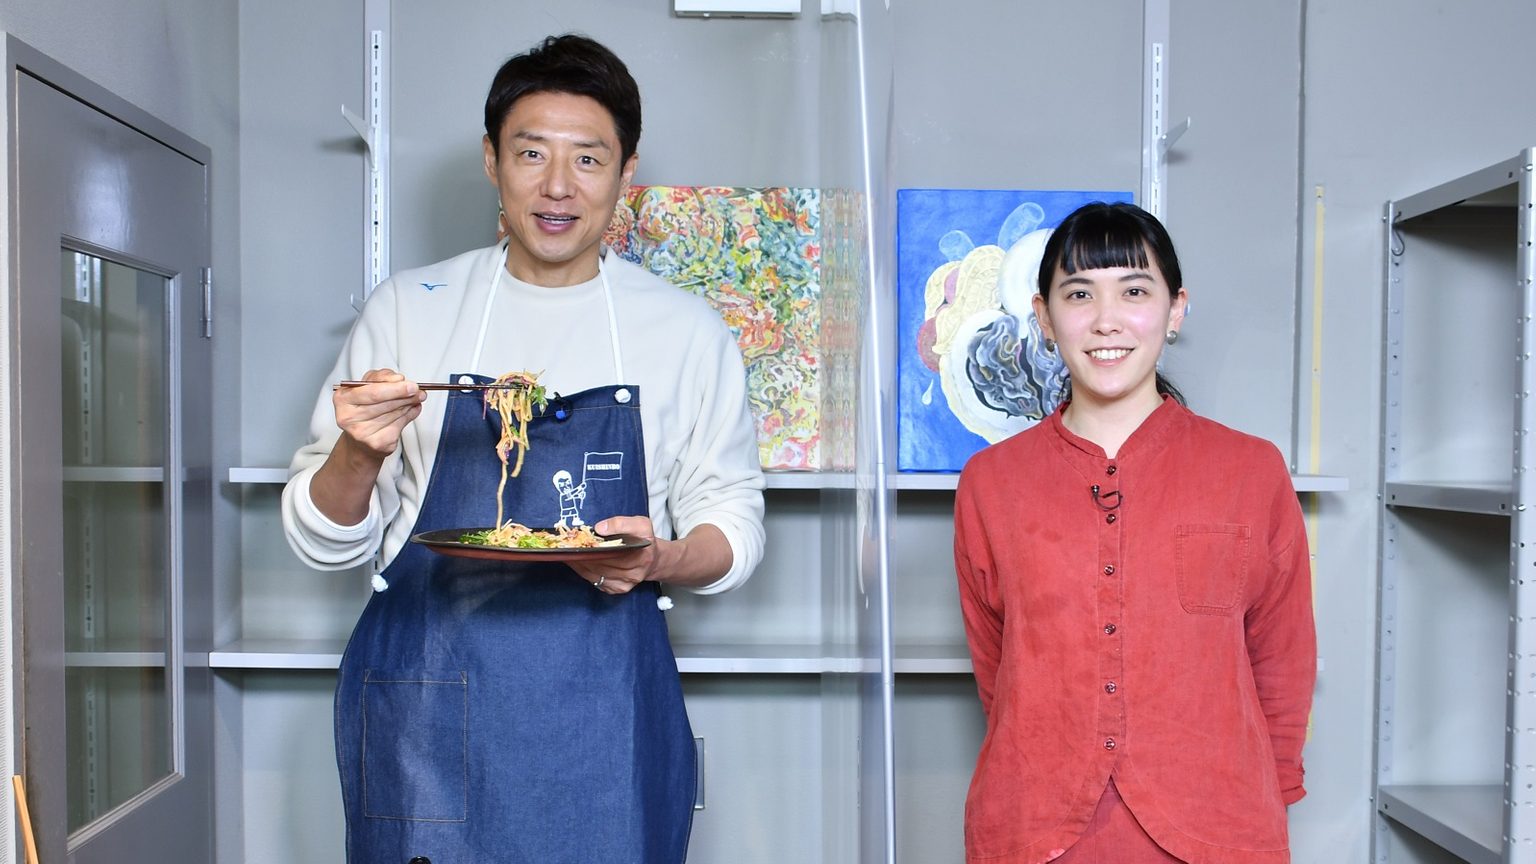 魅惑の「ナッツバター和え麺」に松岡修造が真顔で感動「これ、僕が作ったんだよね？」